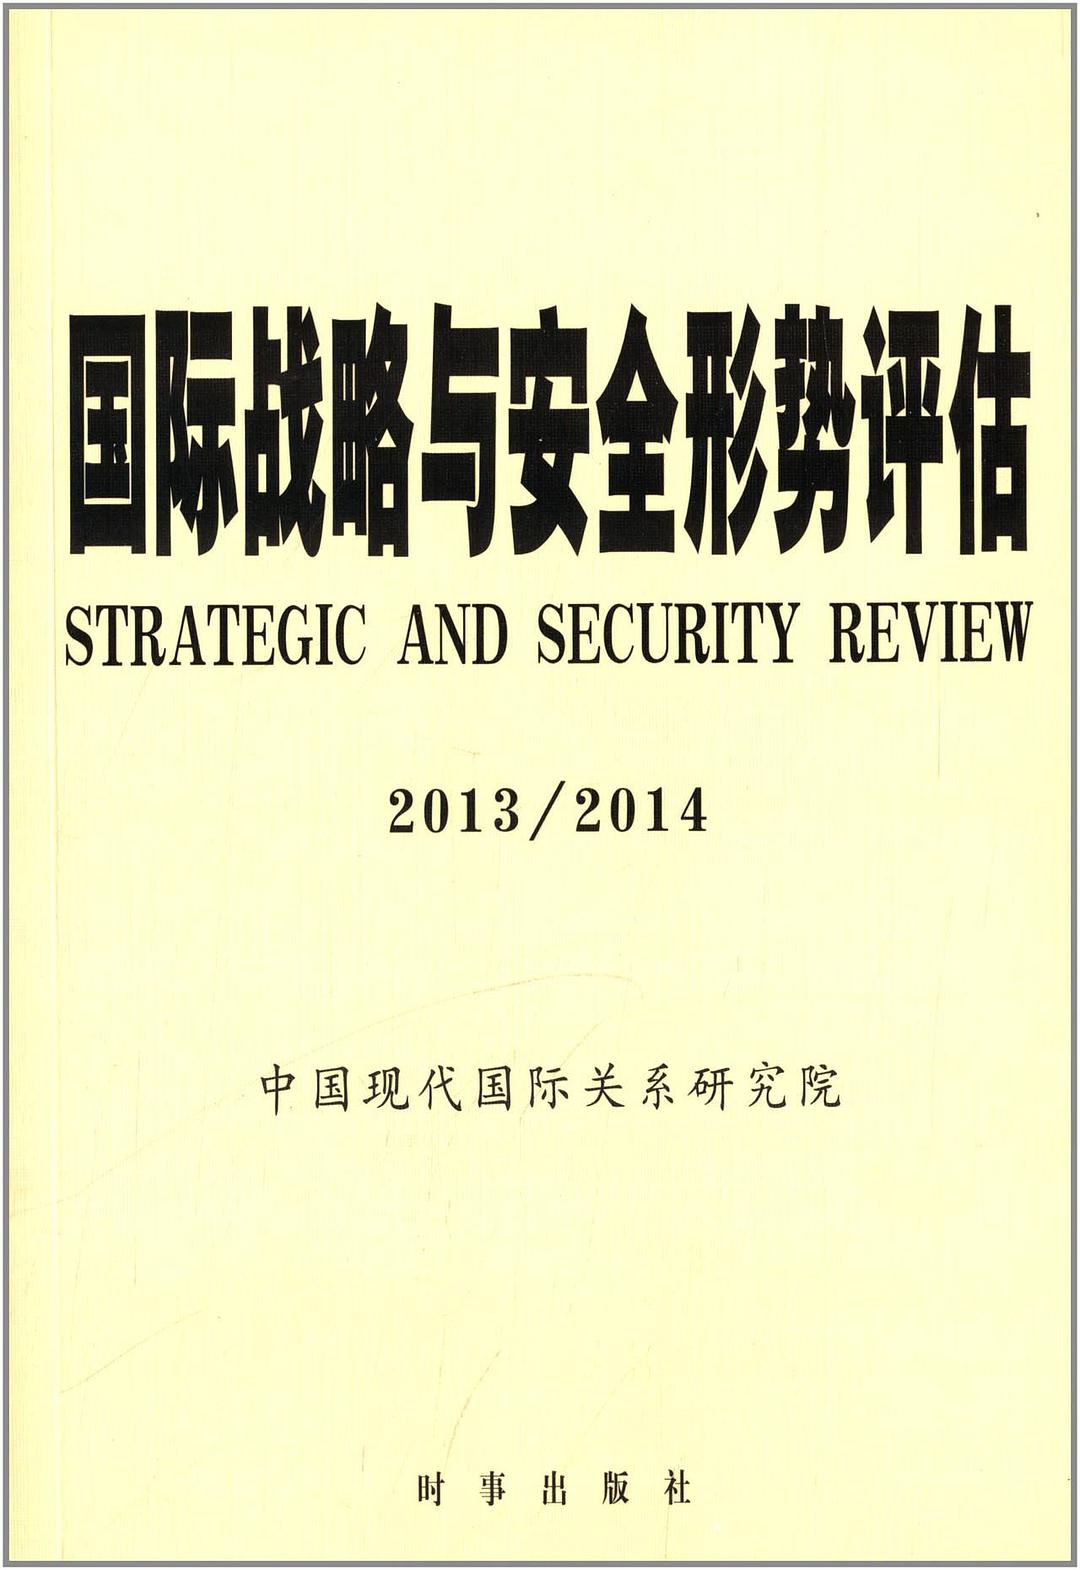 国际战略与安全形势评估 2013/2014 2013/2014